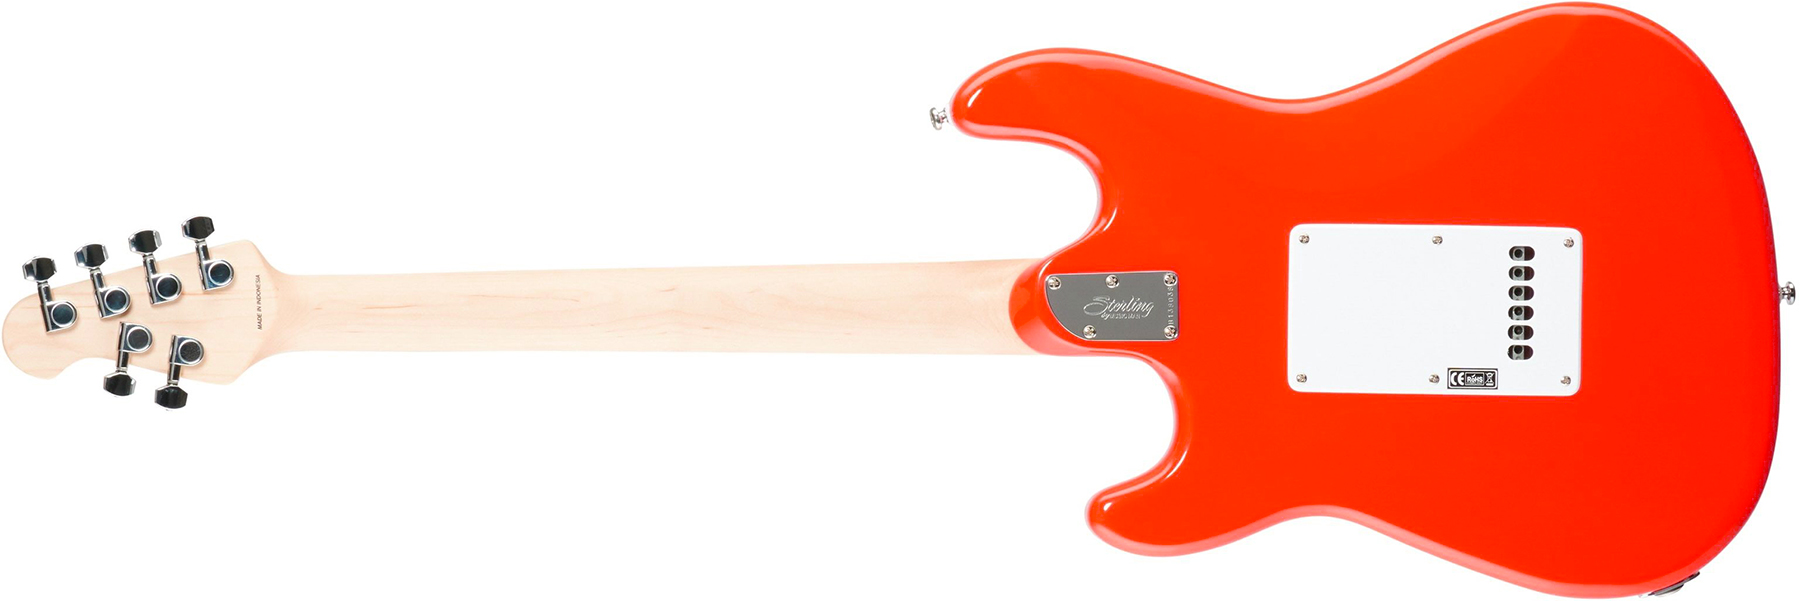 Sterling By Musicman Cutlass Ct30sss 3s Trem Mn - Fiesta Red - Elektrische gitaar in Str-vorm - Variation 1